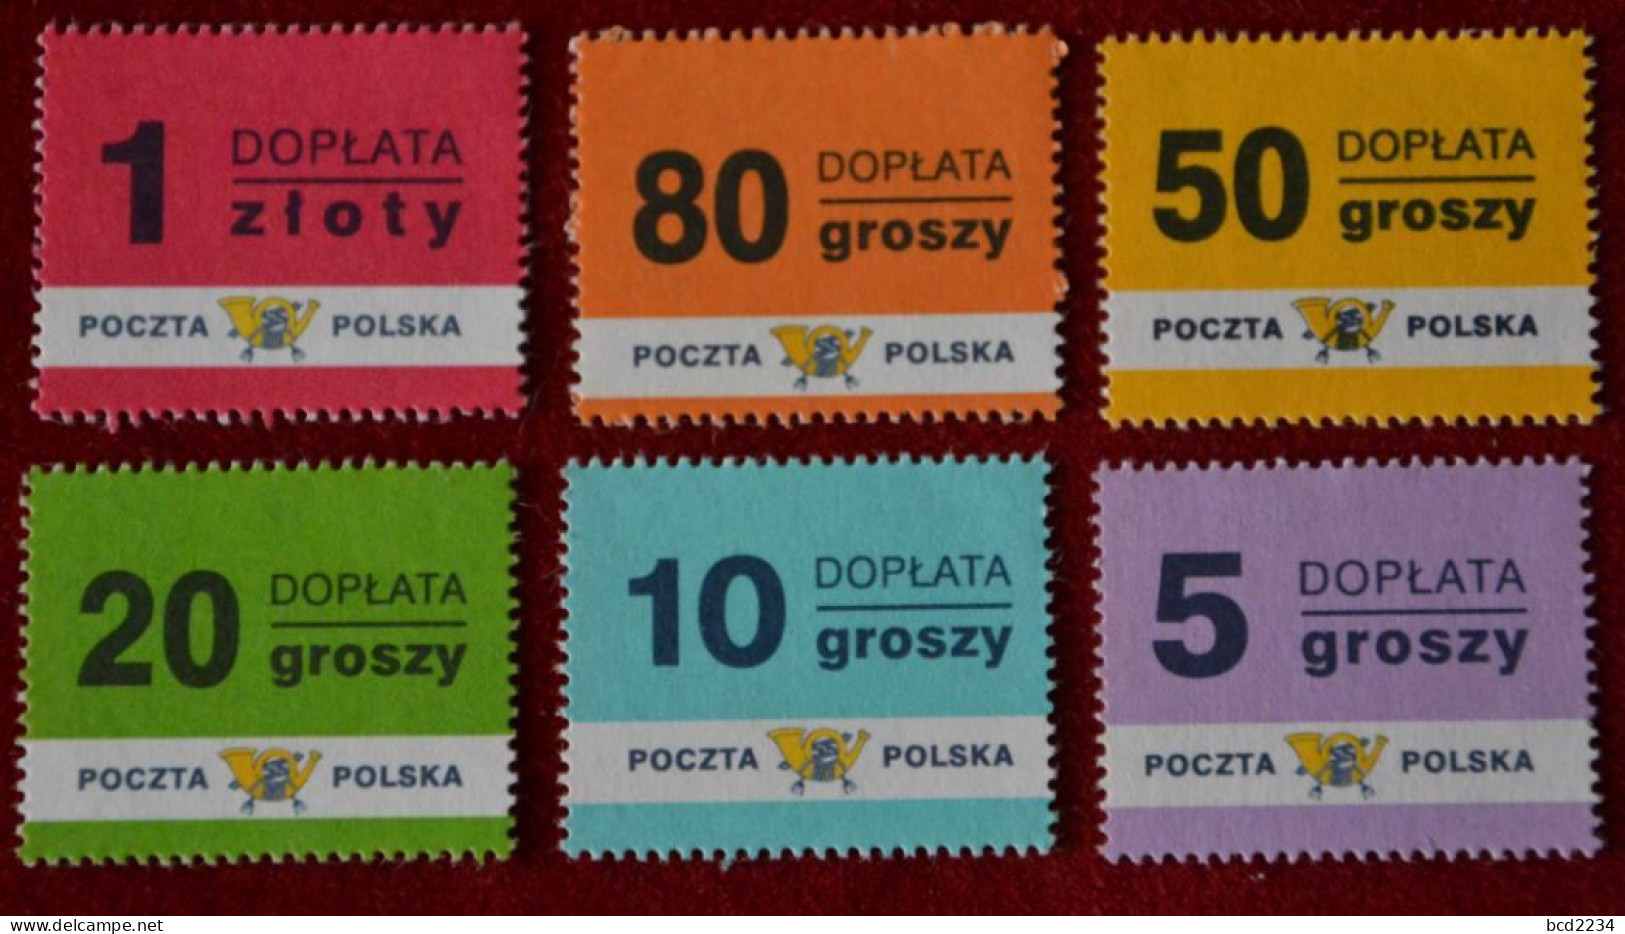 POLAND 1998 POSTAGE DUE FULL SET OF 6 NHM TAXE PORTOMARKEN Mi.169-74 Fi D152-7 POLOGNE POLEN POLONIA POLSKA - Portomarken